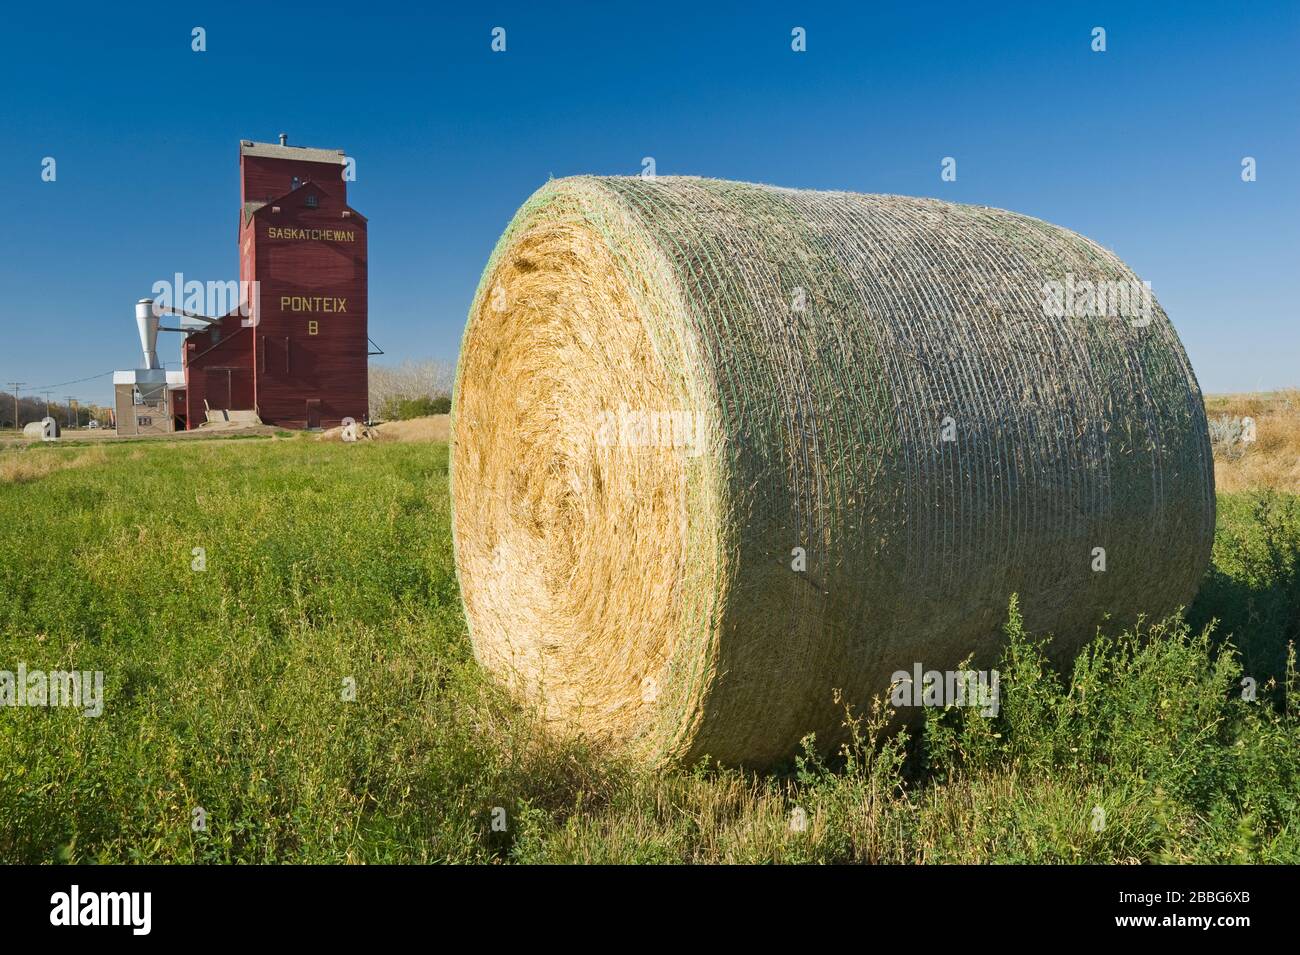 Balles rondes de luzerne et élévateur de grain, Ponteix, Saskatchewan, Canada Banque D'Images